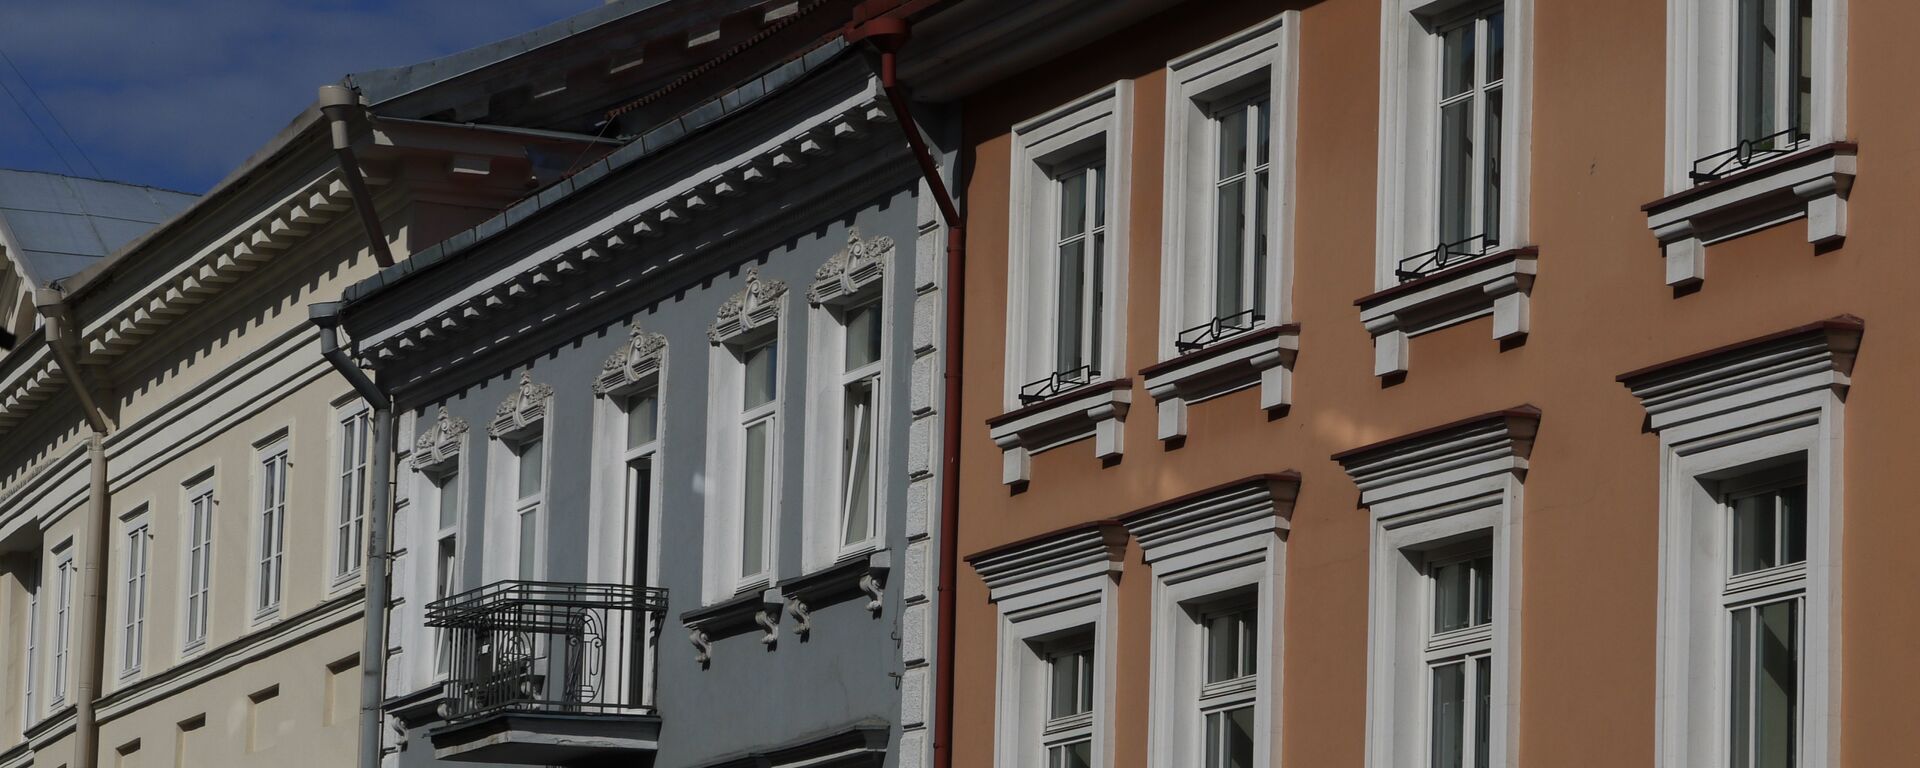 Жилые здания в Вильнюсе - Sputnik Lietuva, 1920, 10.09.2021